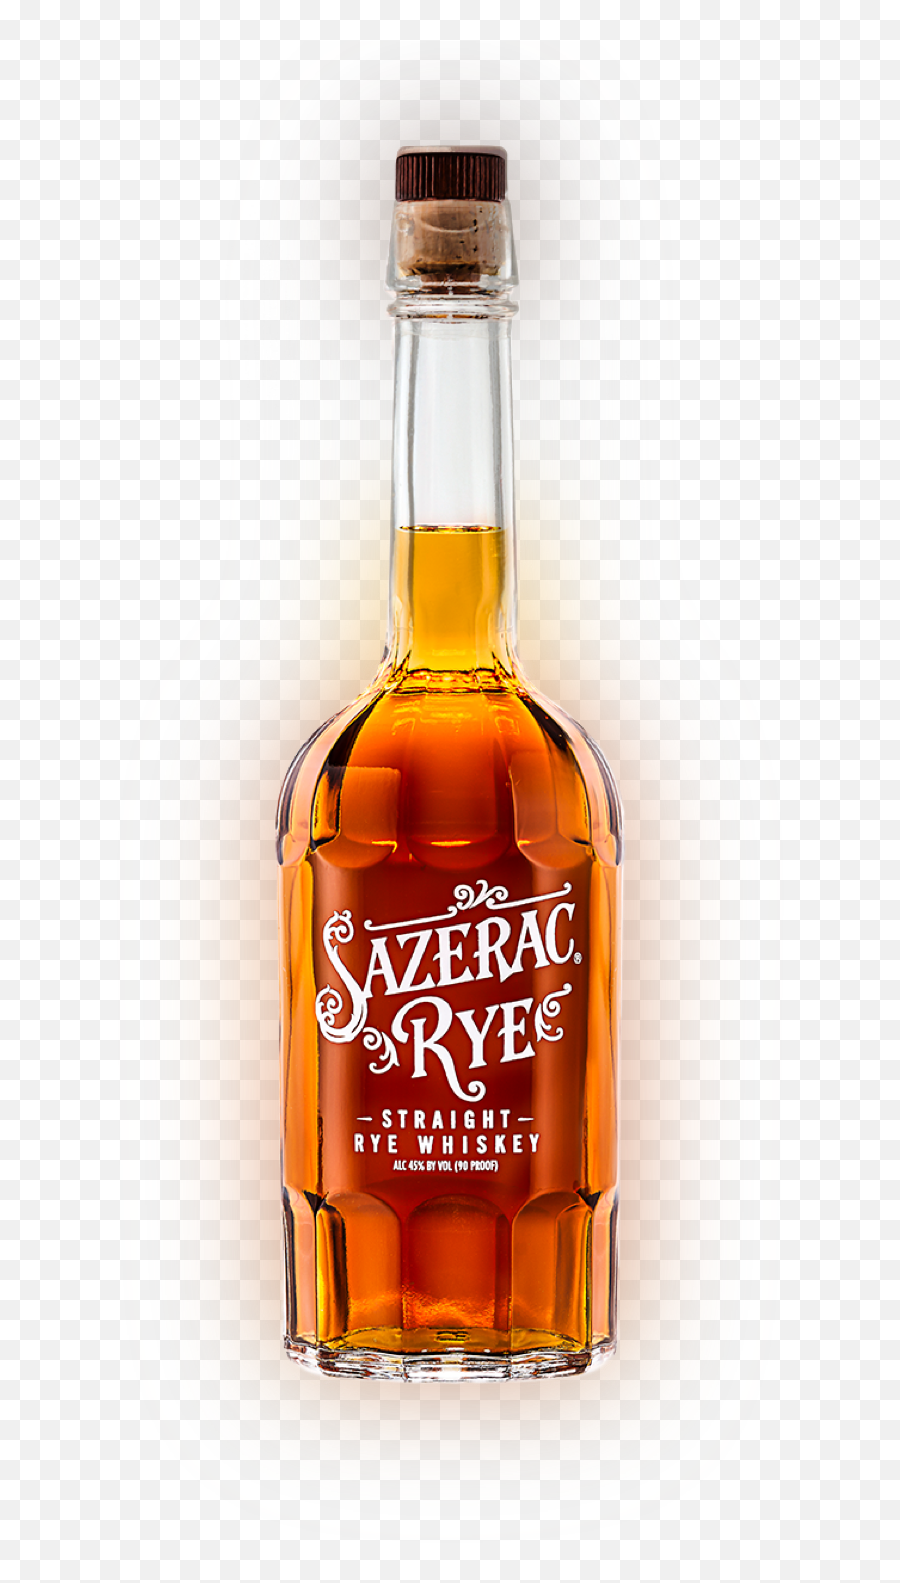 Sazerac Rye - Sazerac New Orleans Whiskey Png,Whiskey Bottle Png